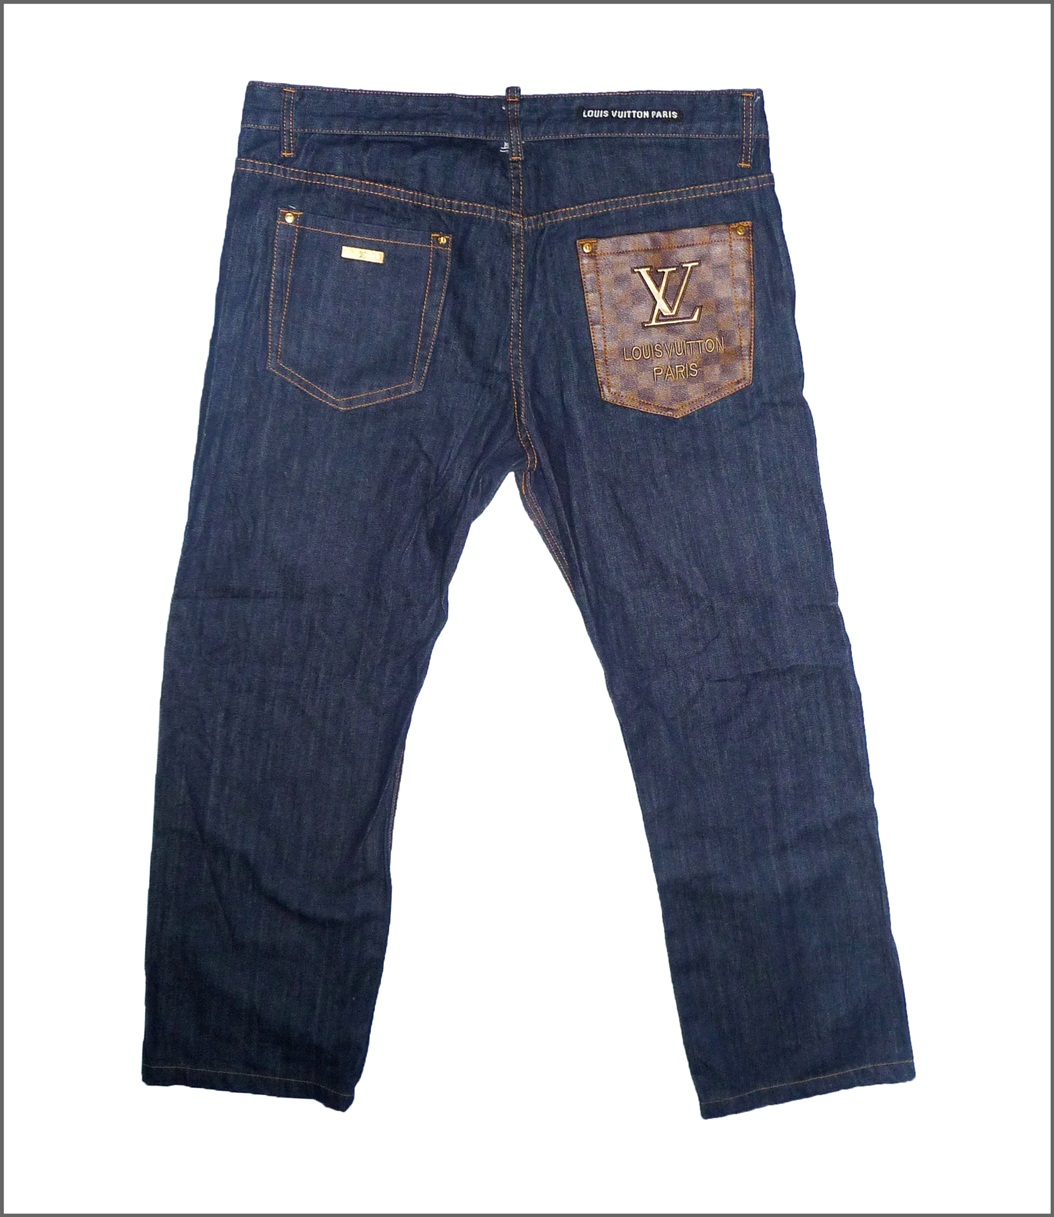 Dallek Shop - Bundle Online Shoping: Louis Vuitton Paris Jeans